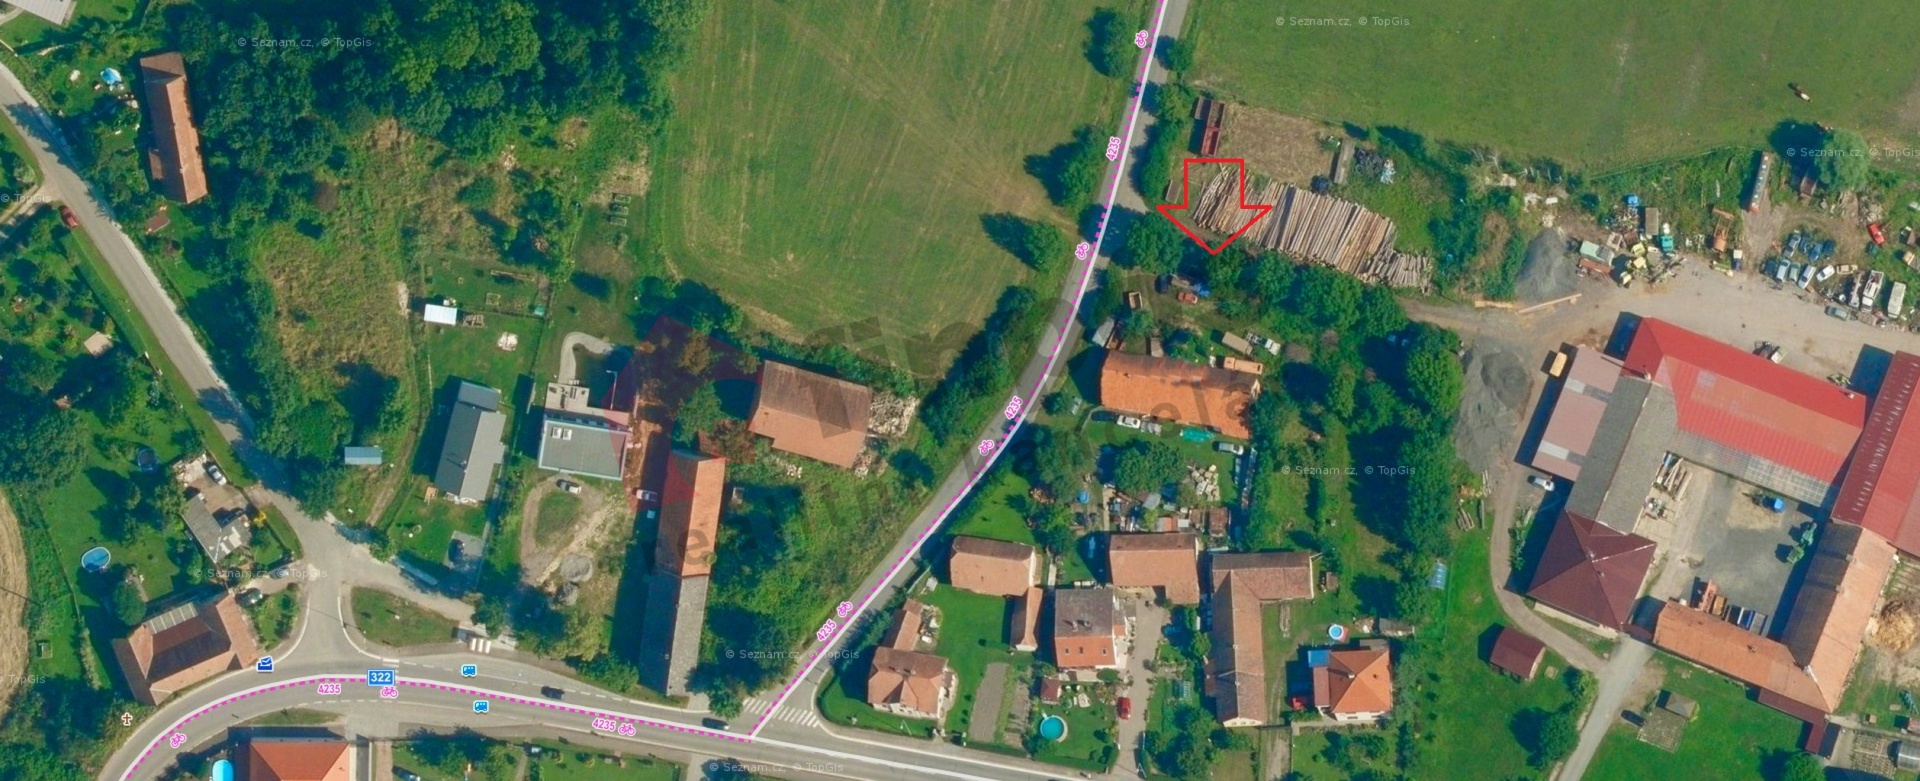 Prodej stavebního pozemku 1230 m2 v obci Komárov